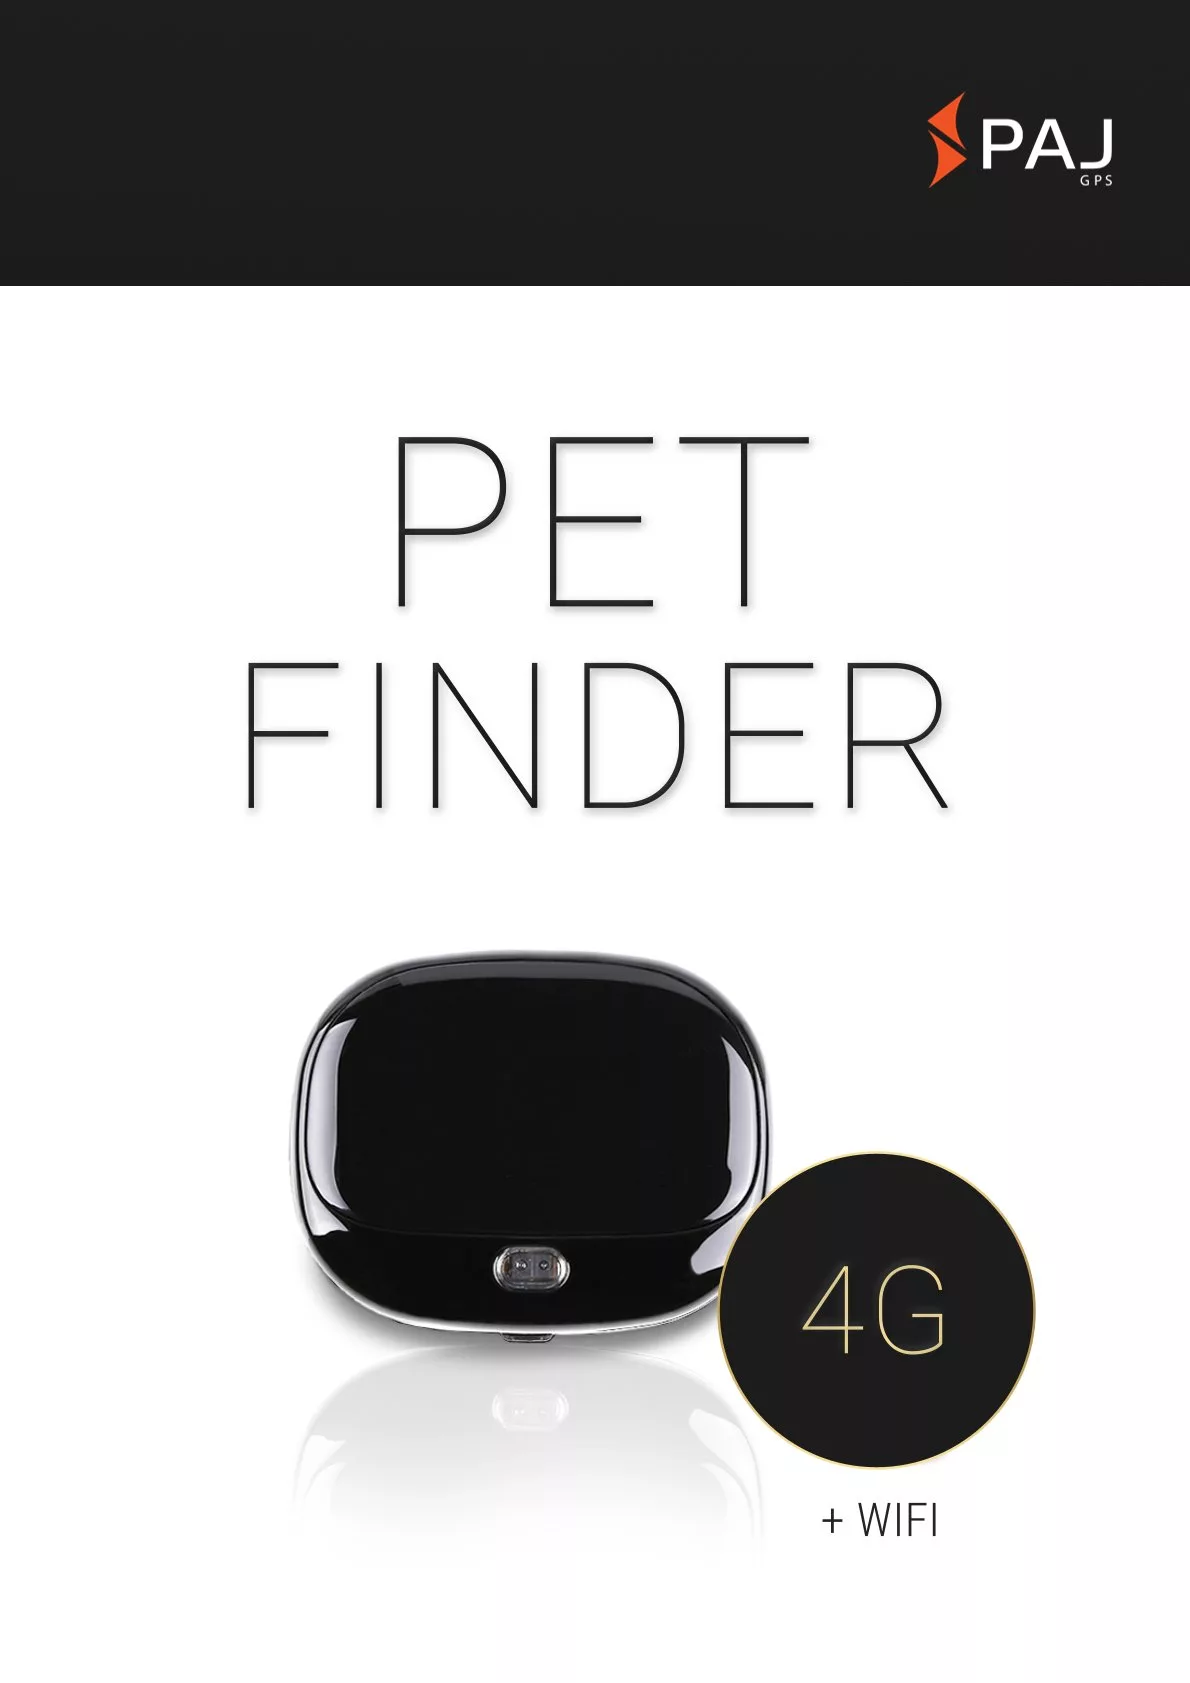 Immagine di copertina per scheda tecnica PET Finder 4G nero